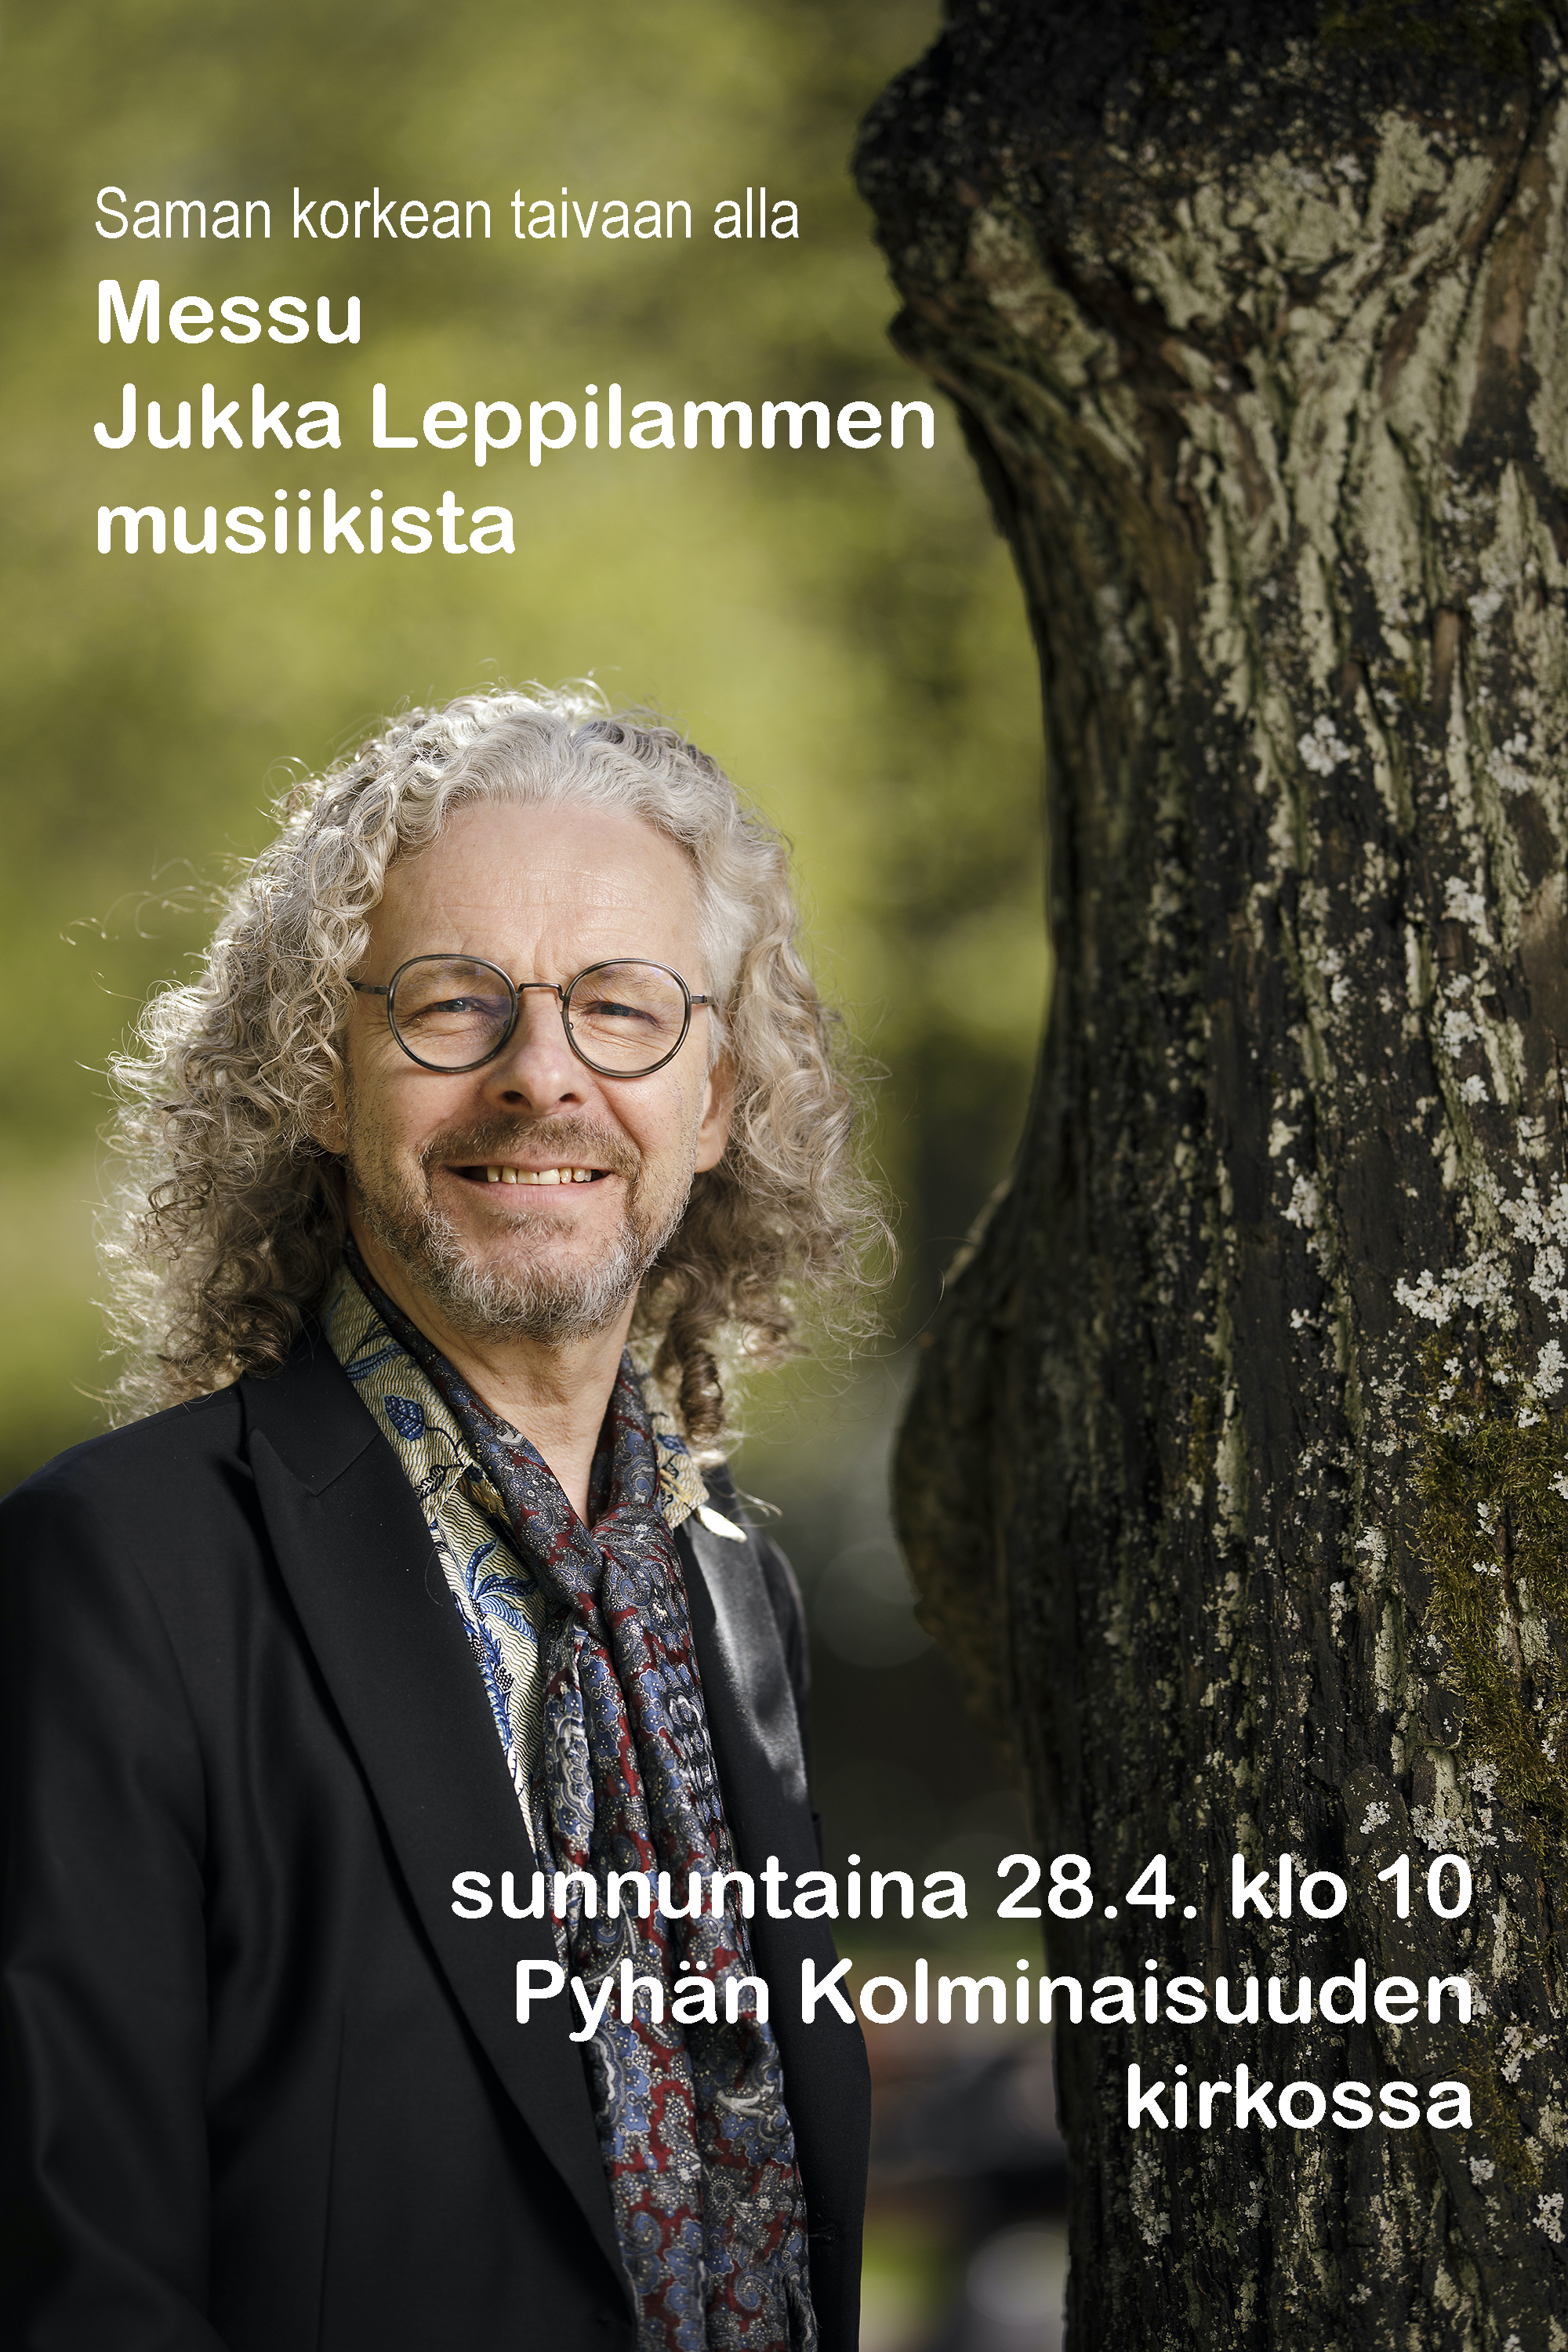 ”Paras musiikki on tila” – messu Jukka Leppilammen musiikista Ylivieskan kirkossa 28. huhtikuuta